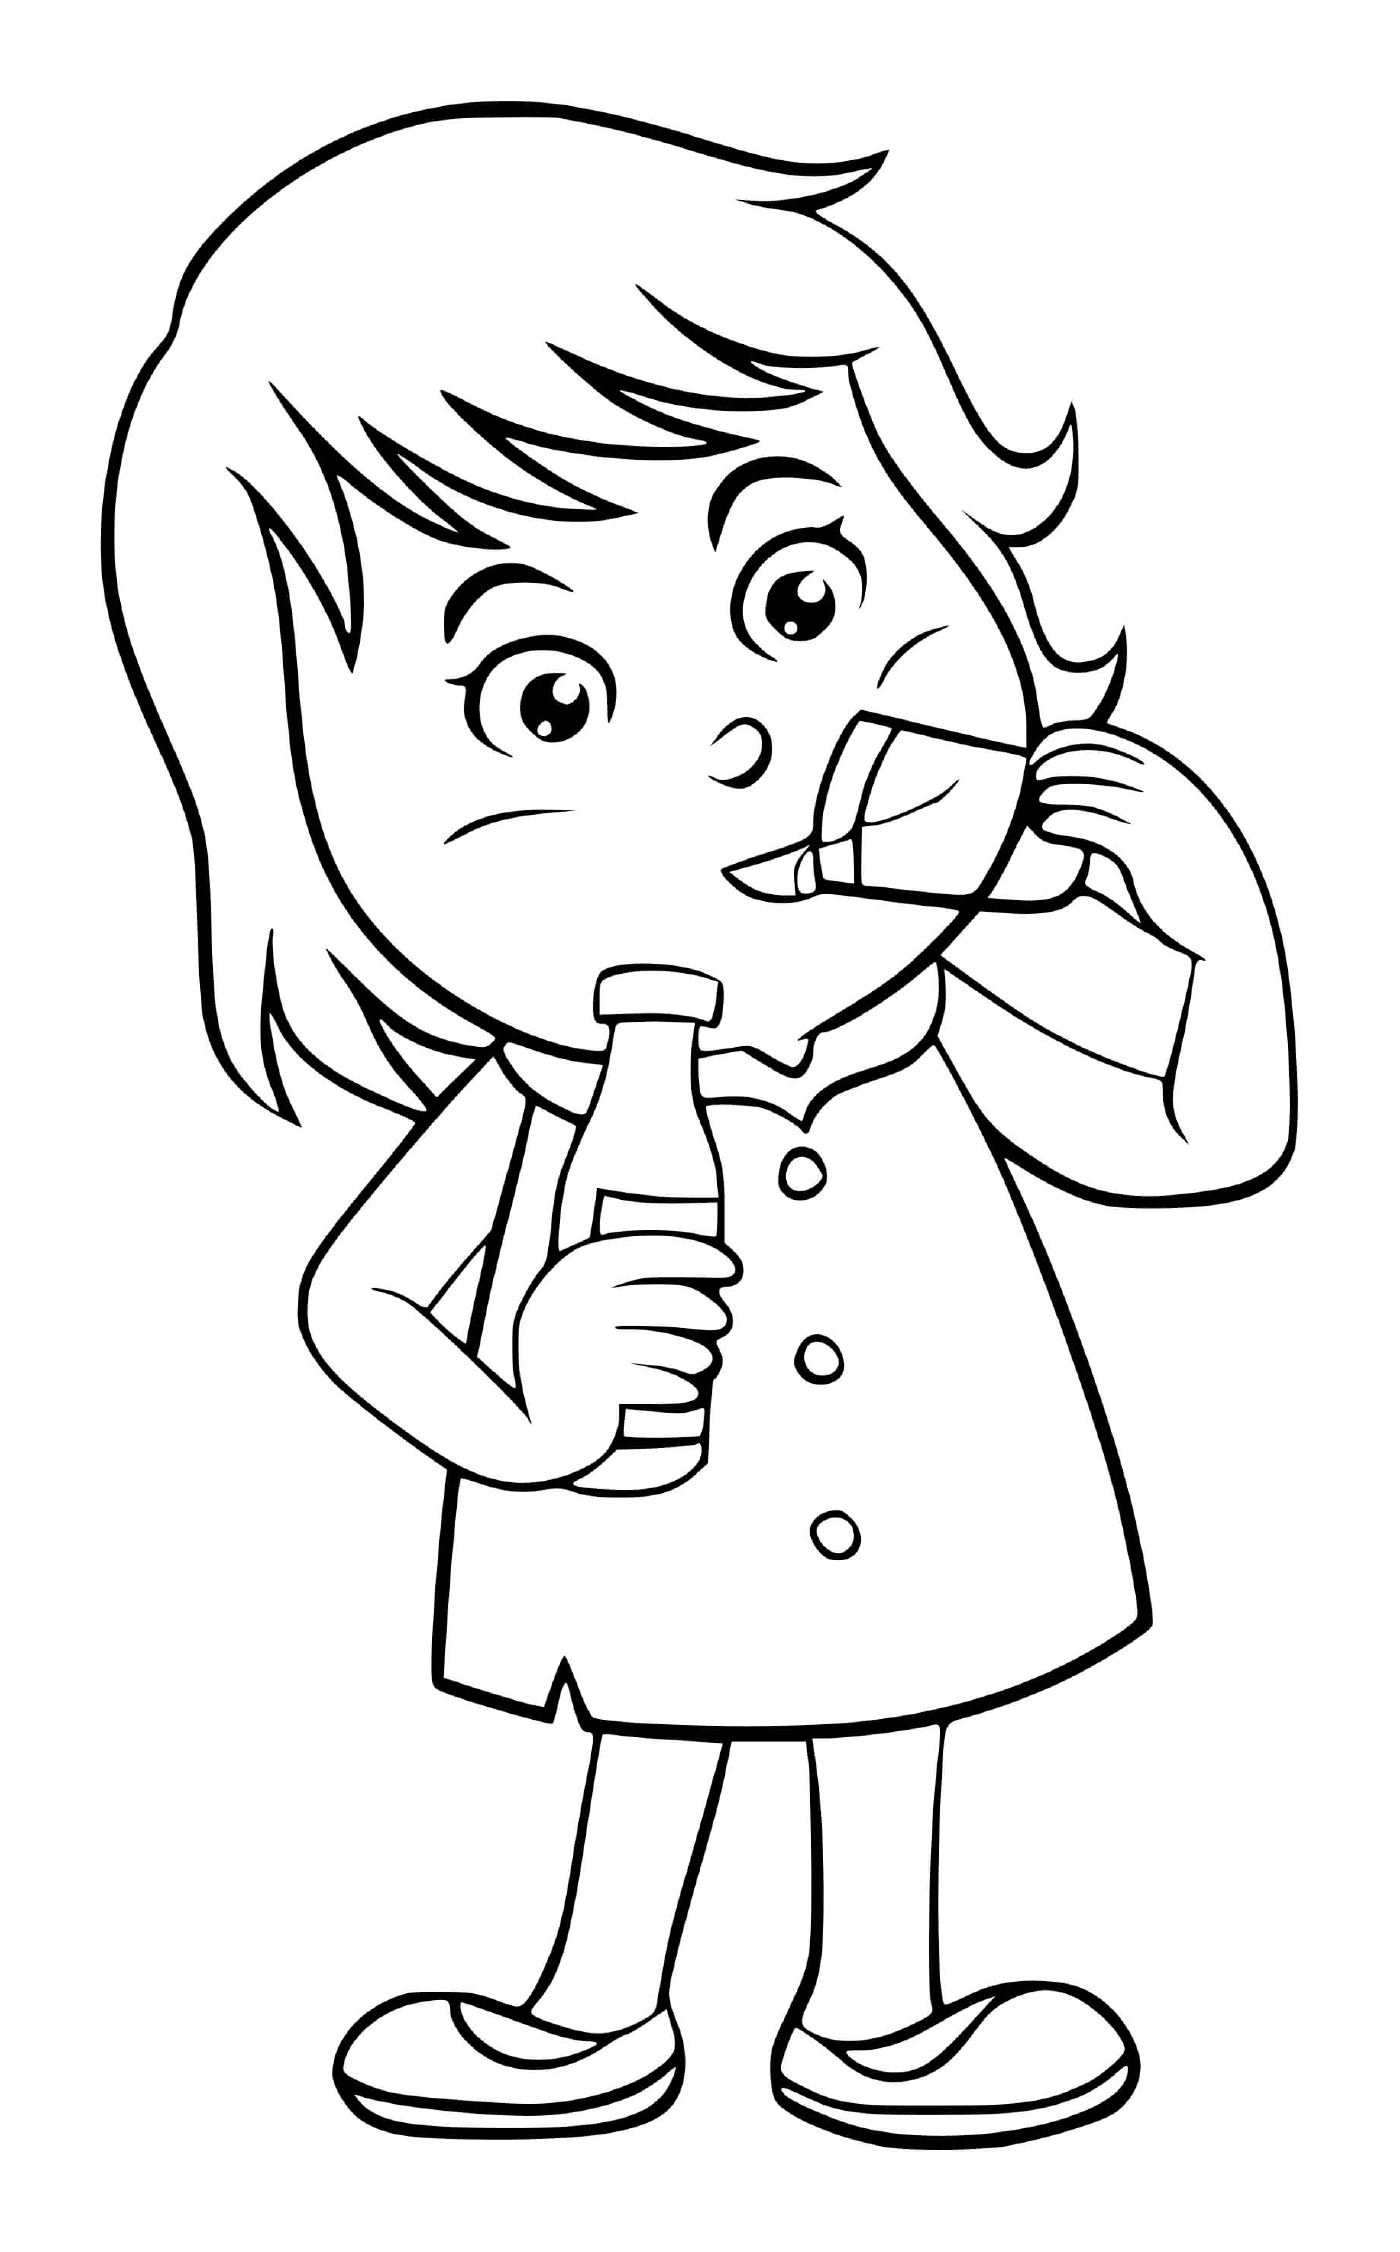   Une enfant boit de l'eau avec soif 